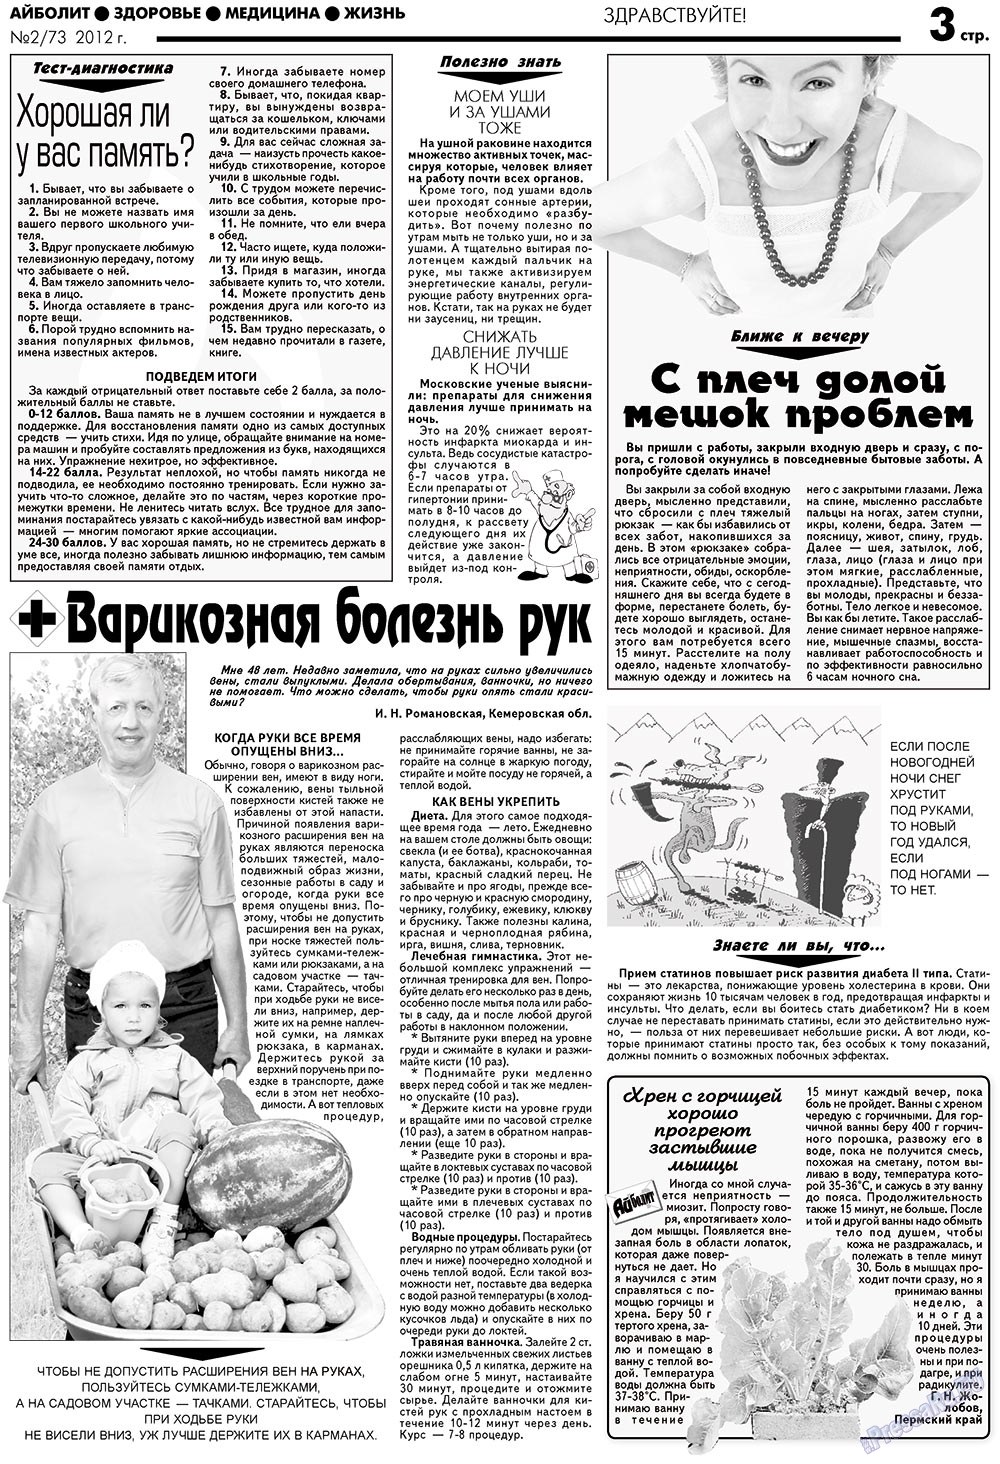 АйБолит, газета. 2012 №2 стр.3